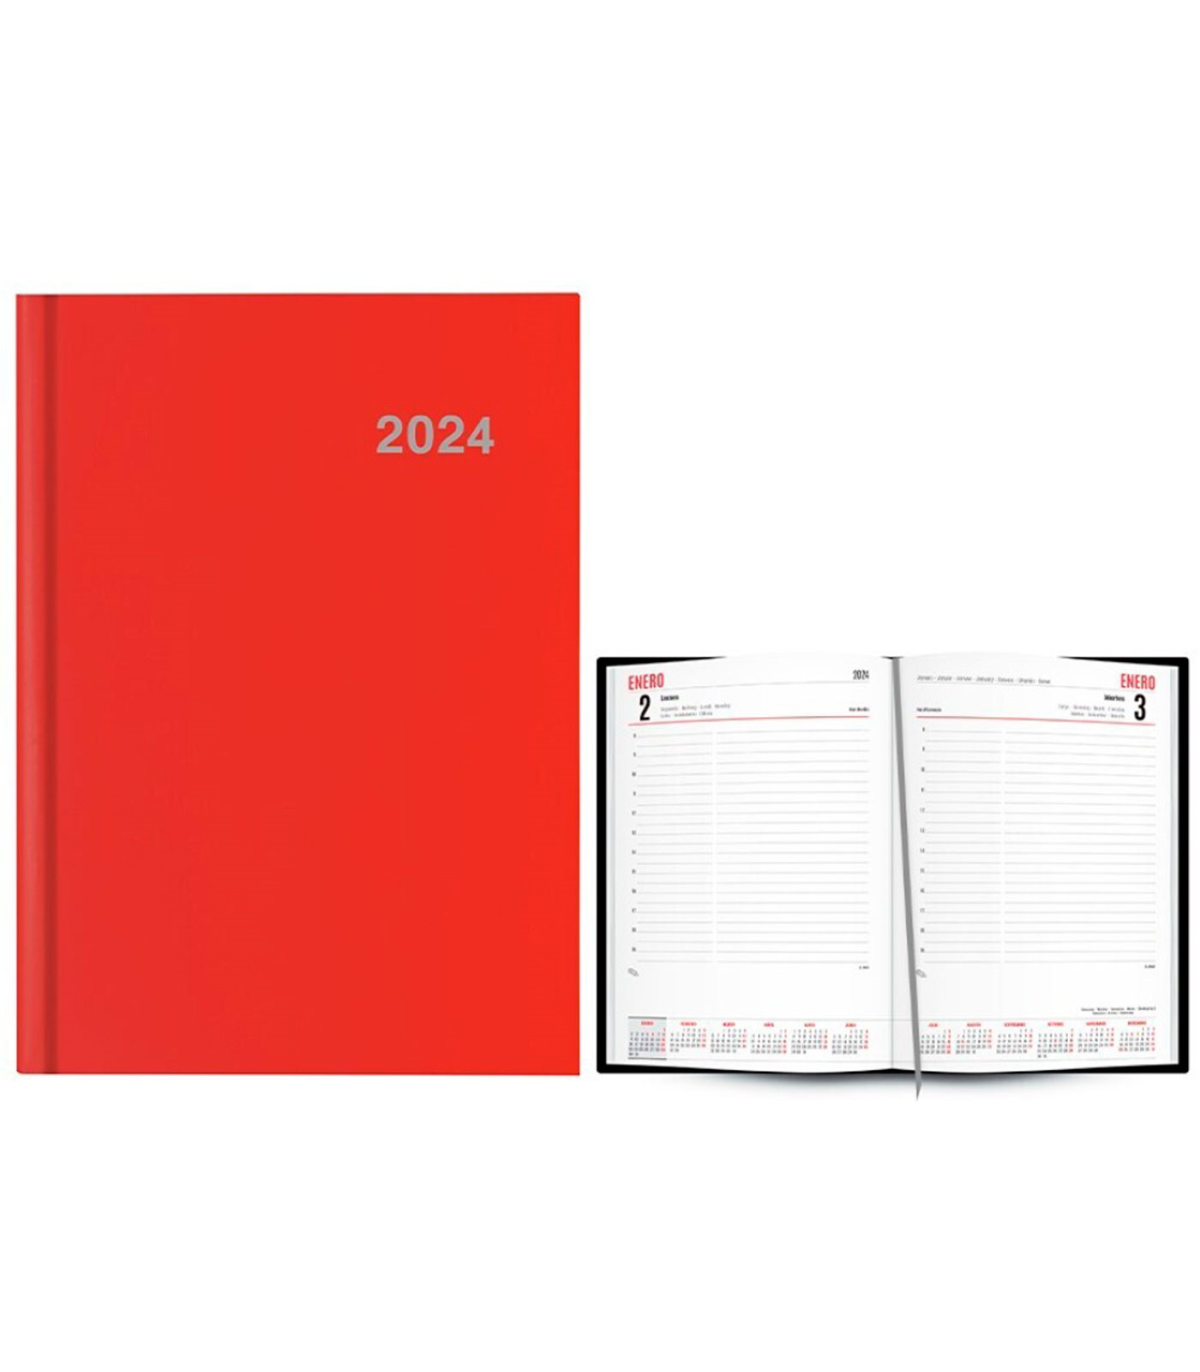 Tradineur - Agenda 2024, modelo París, tapa dura y cinta marcapáginas,  vista día página, enero a diciembre, planificador anual d